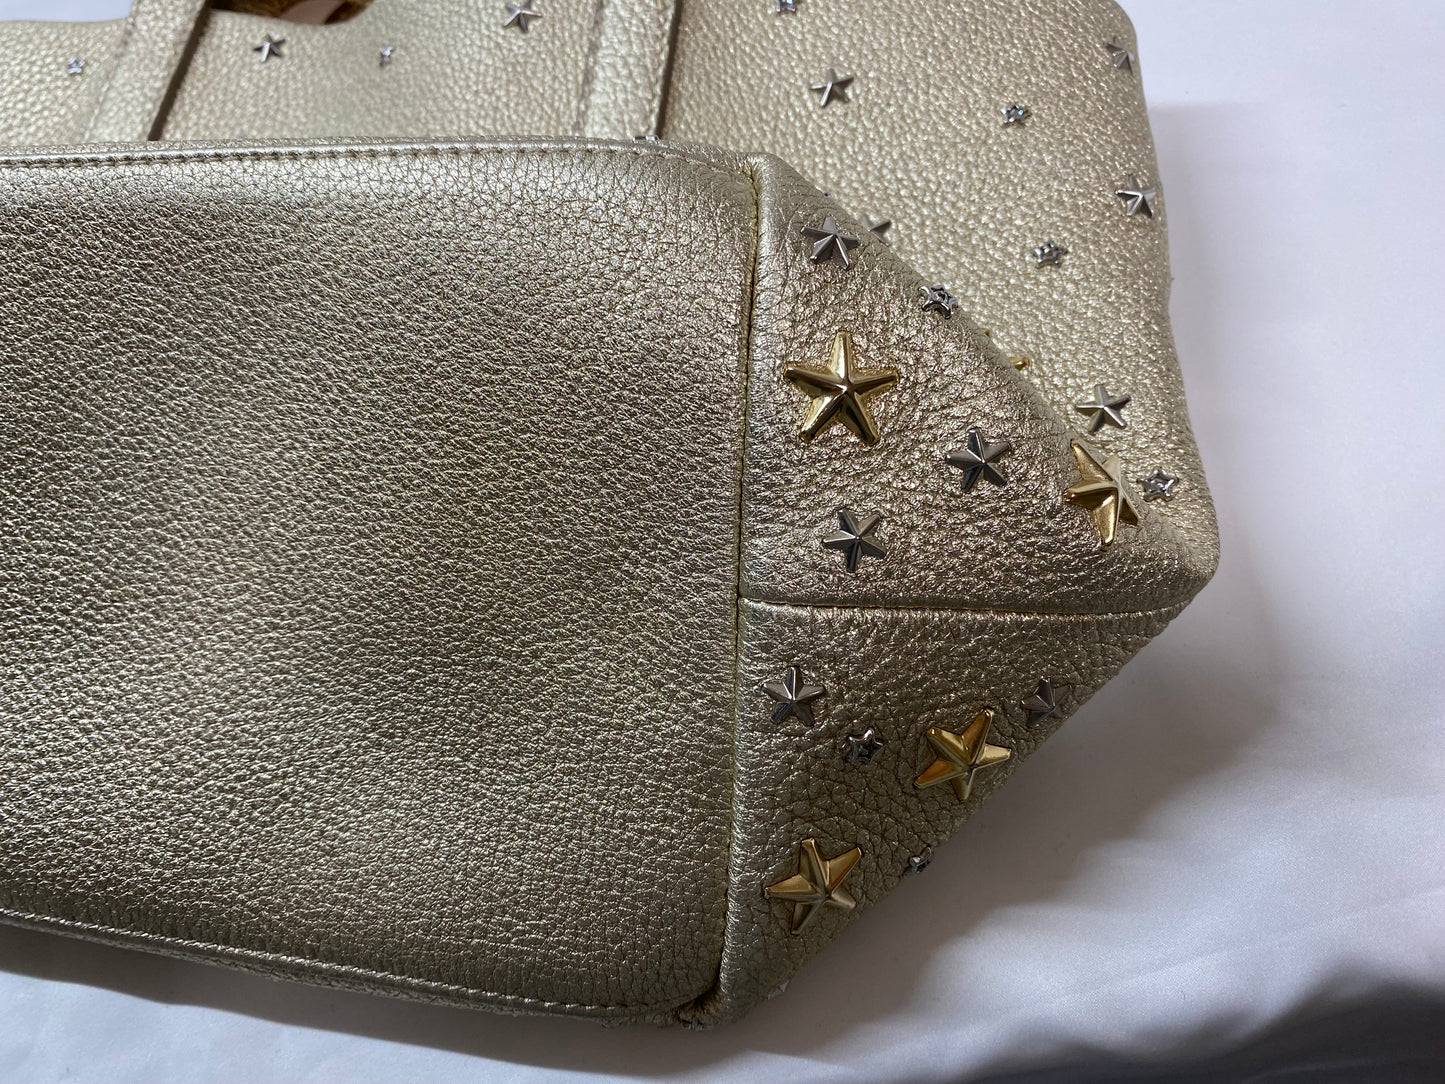 Jimmy Choo Jimmy Choo leather mini tote bag with star studs gold